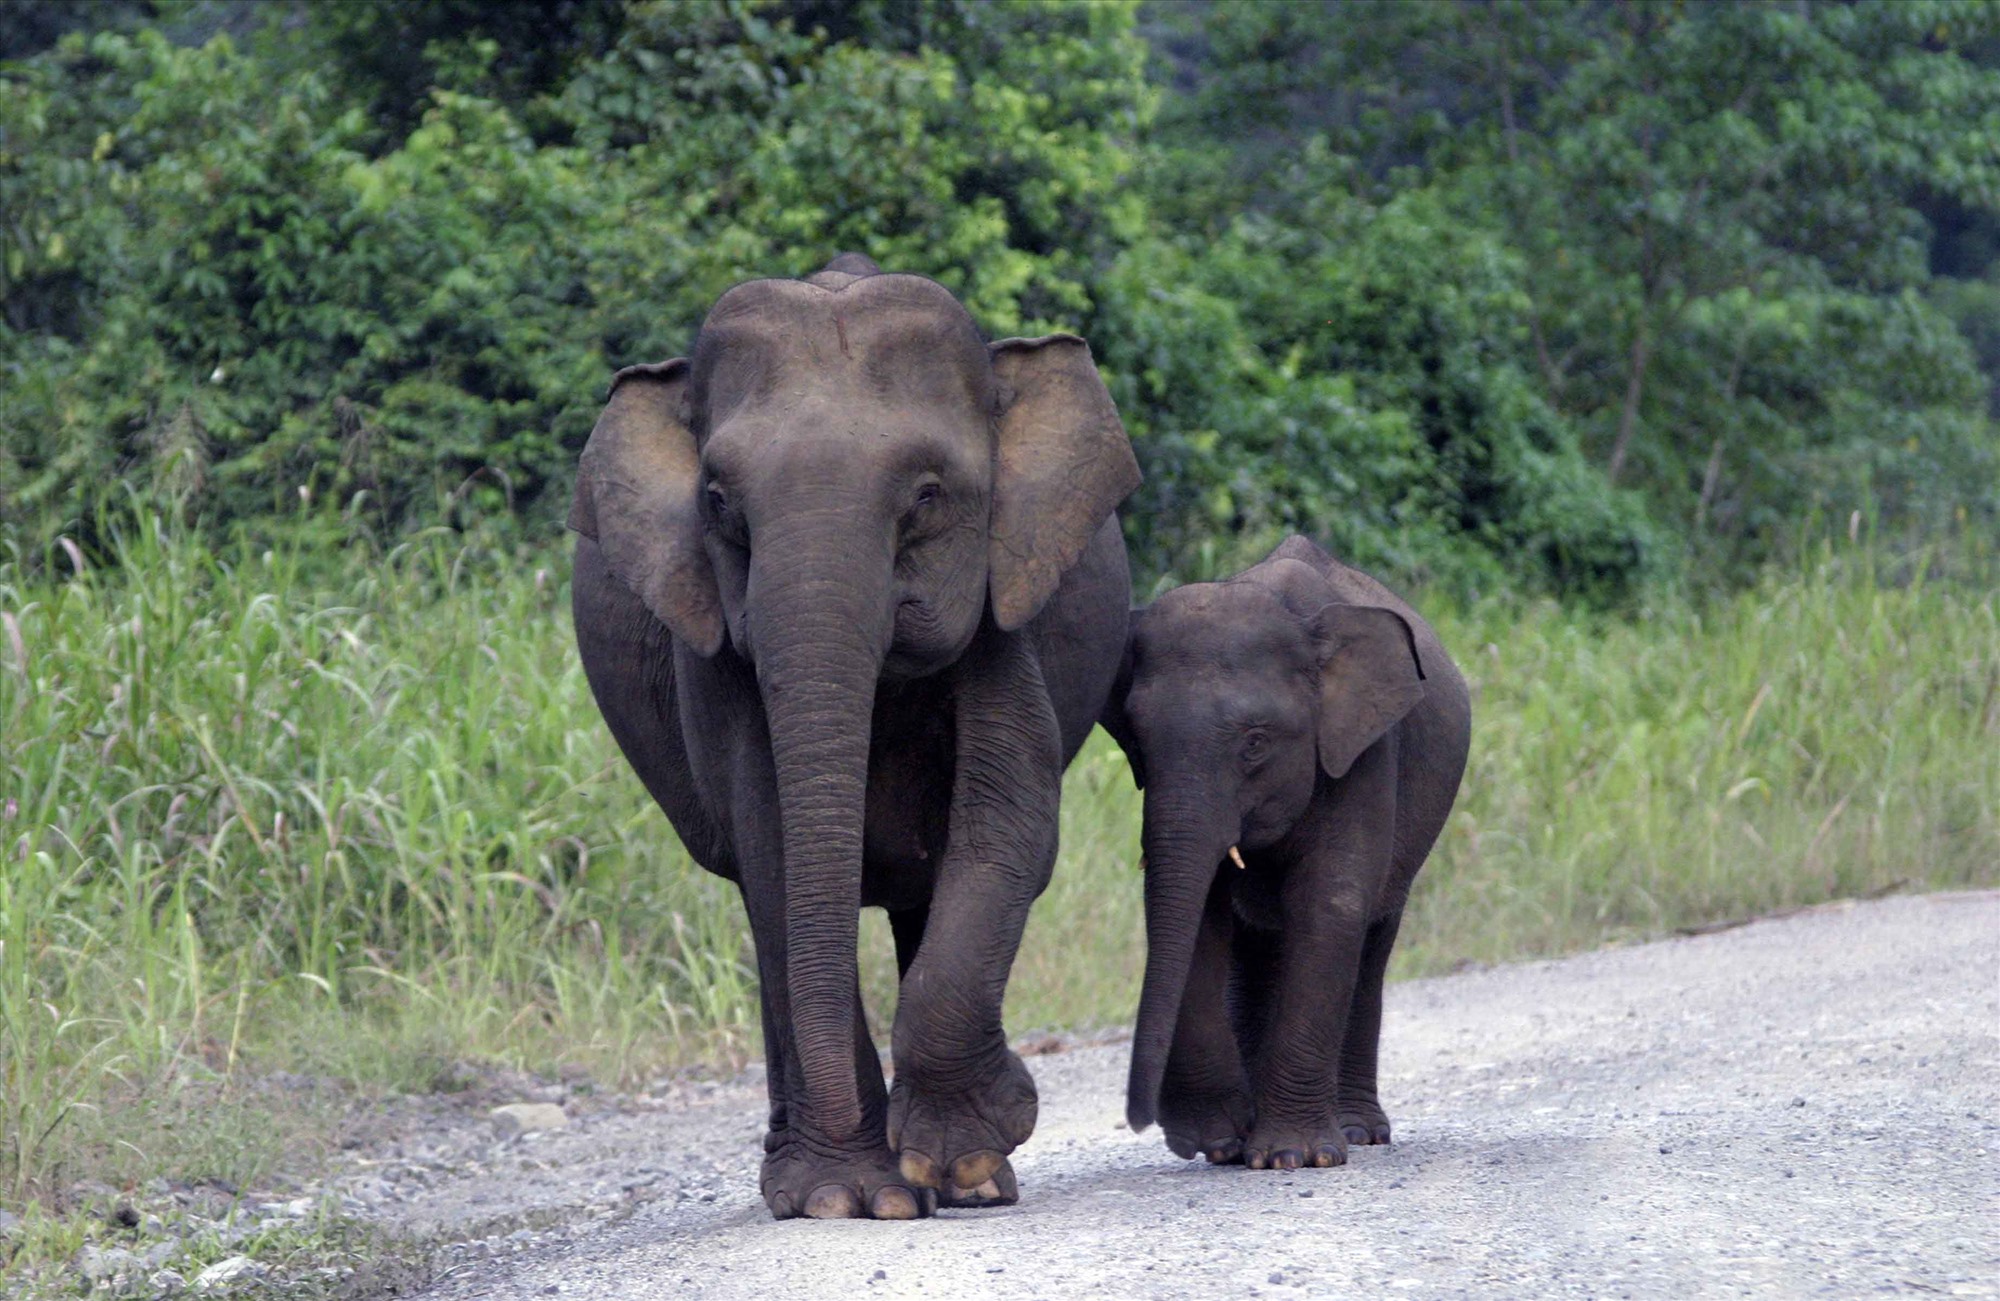 Hiện voi Châu Á đang bị đe dọa trong tự nhiên. Ảnh: WWF cung cấp 